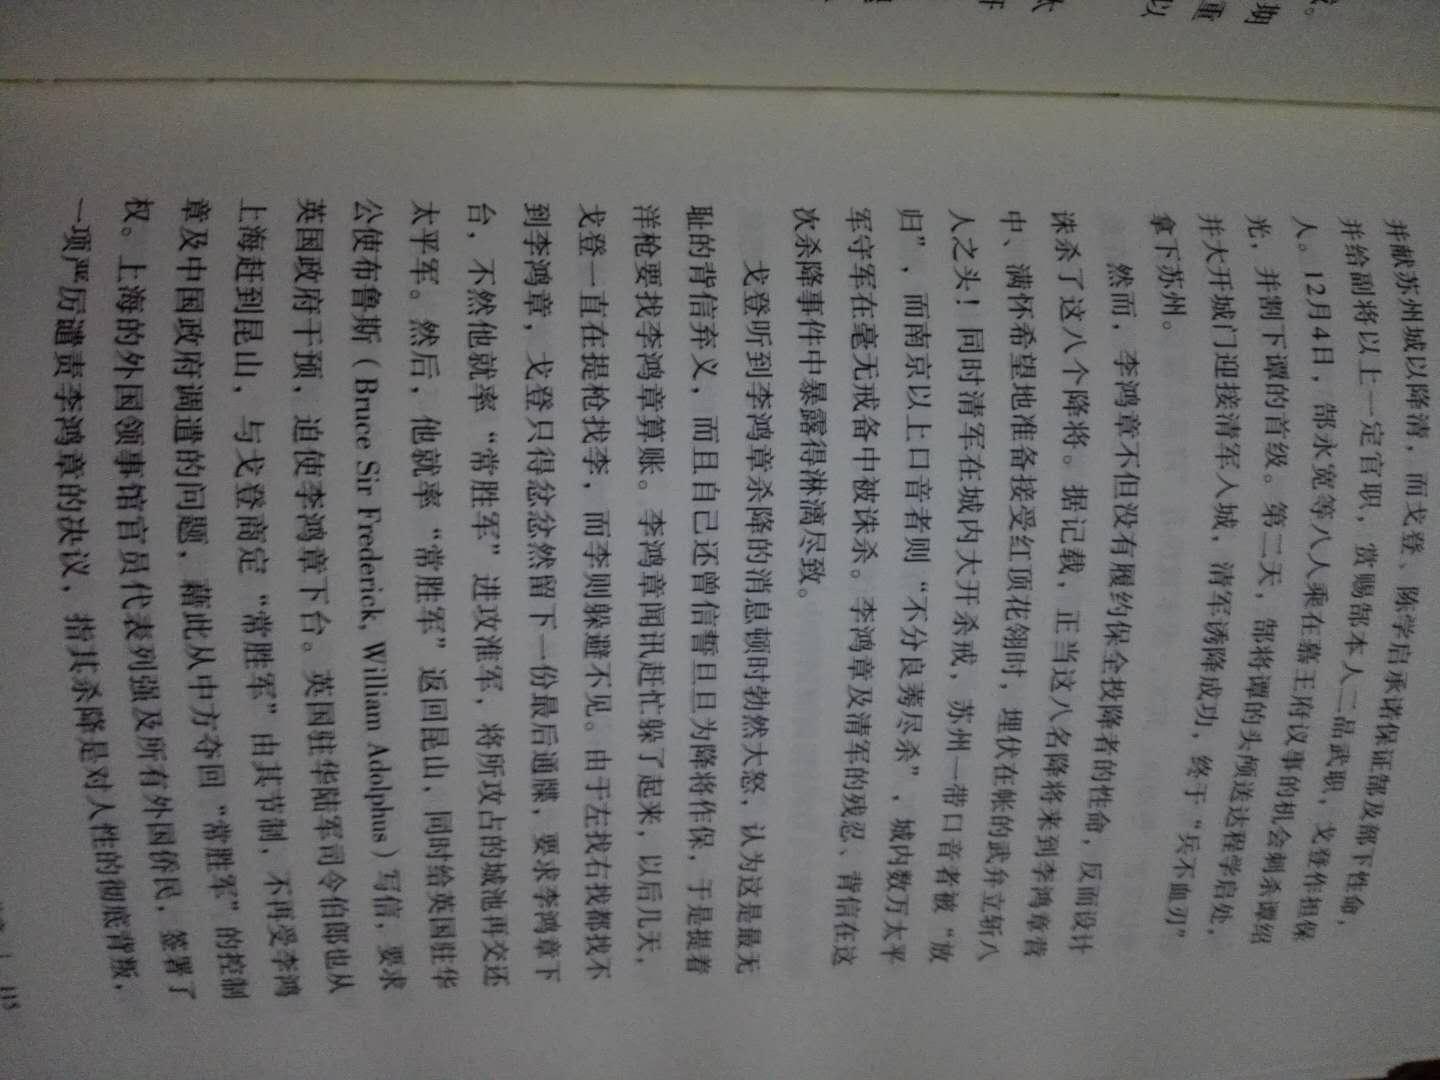 在满清最后四十年，李鸿章的所作所为是中国的风向标，看他的奏折，言行举止可以折射社会的衰退，清廷的腐败无能。